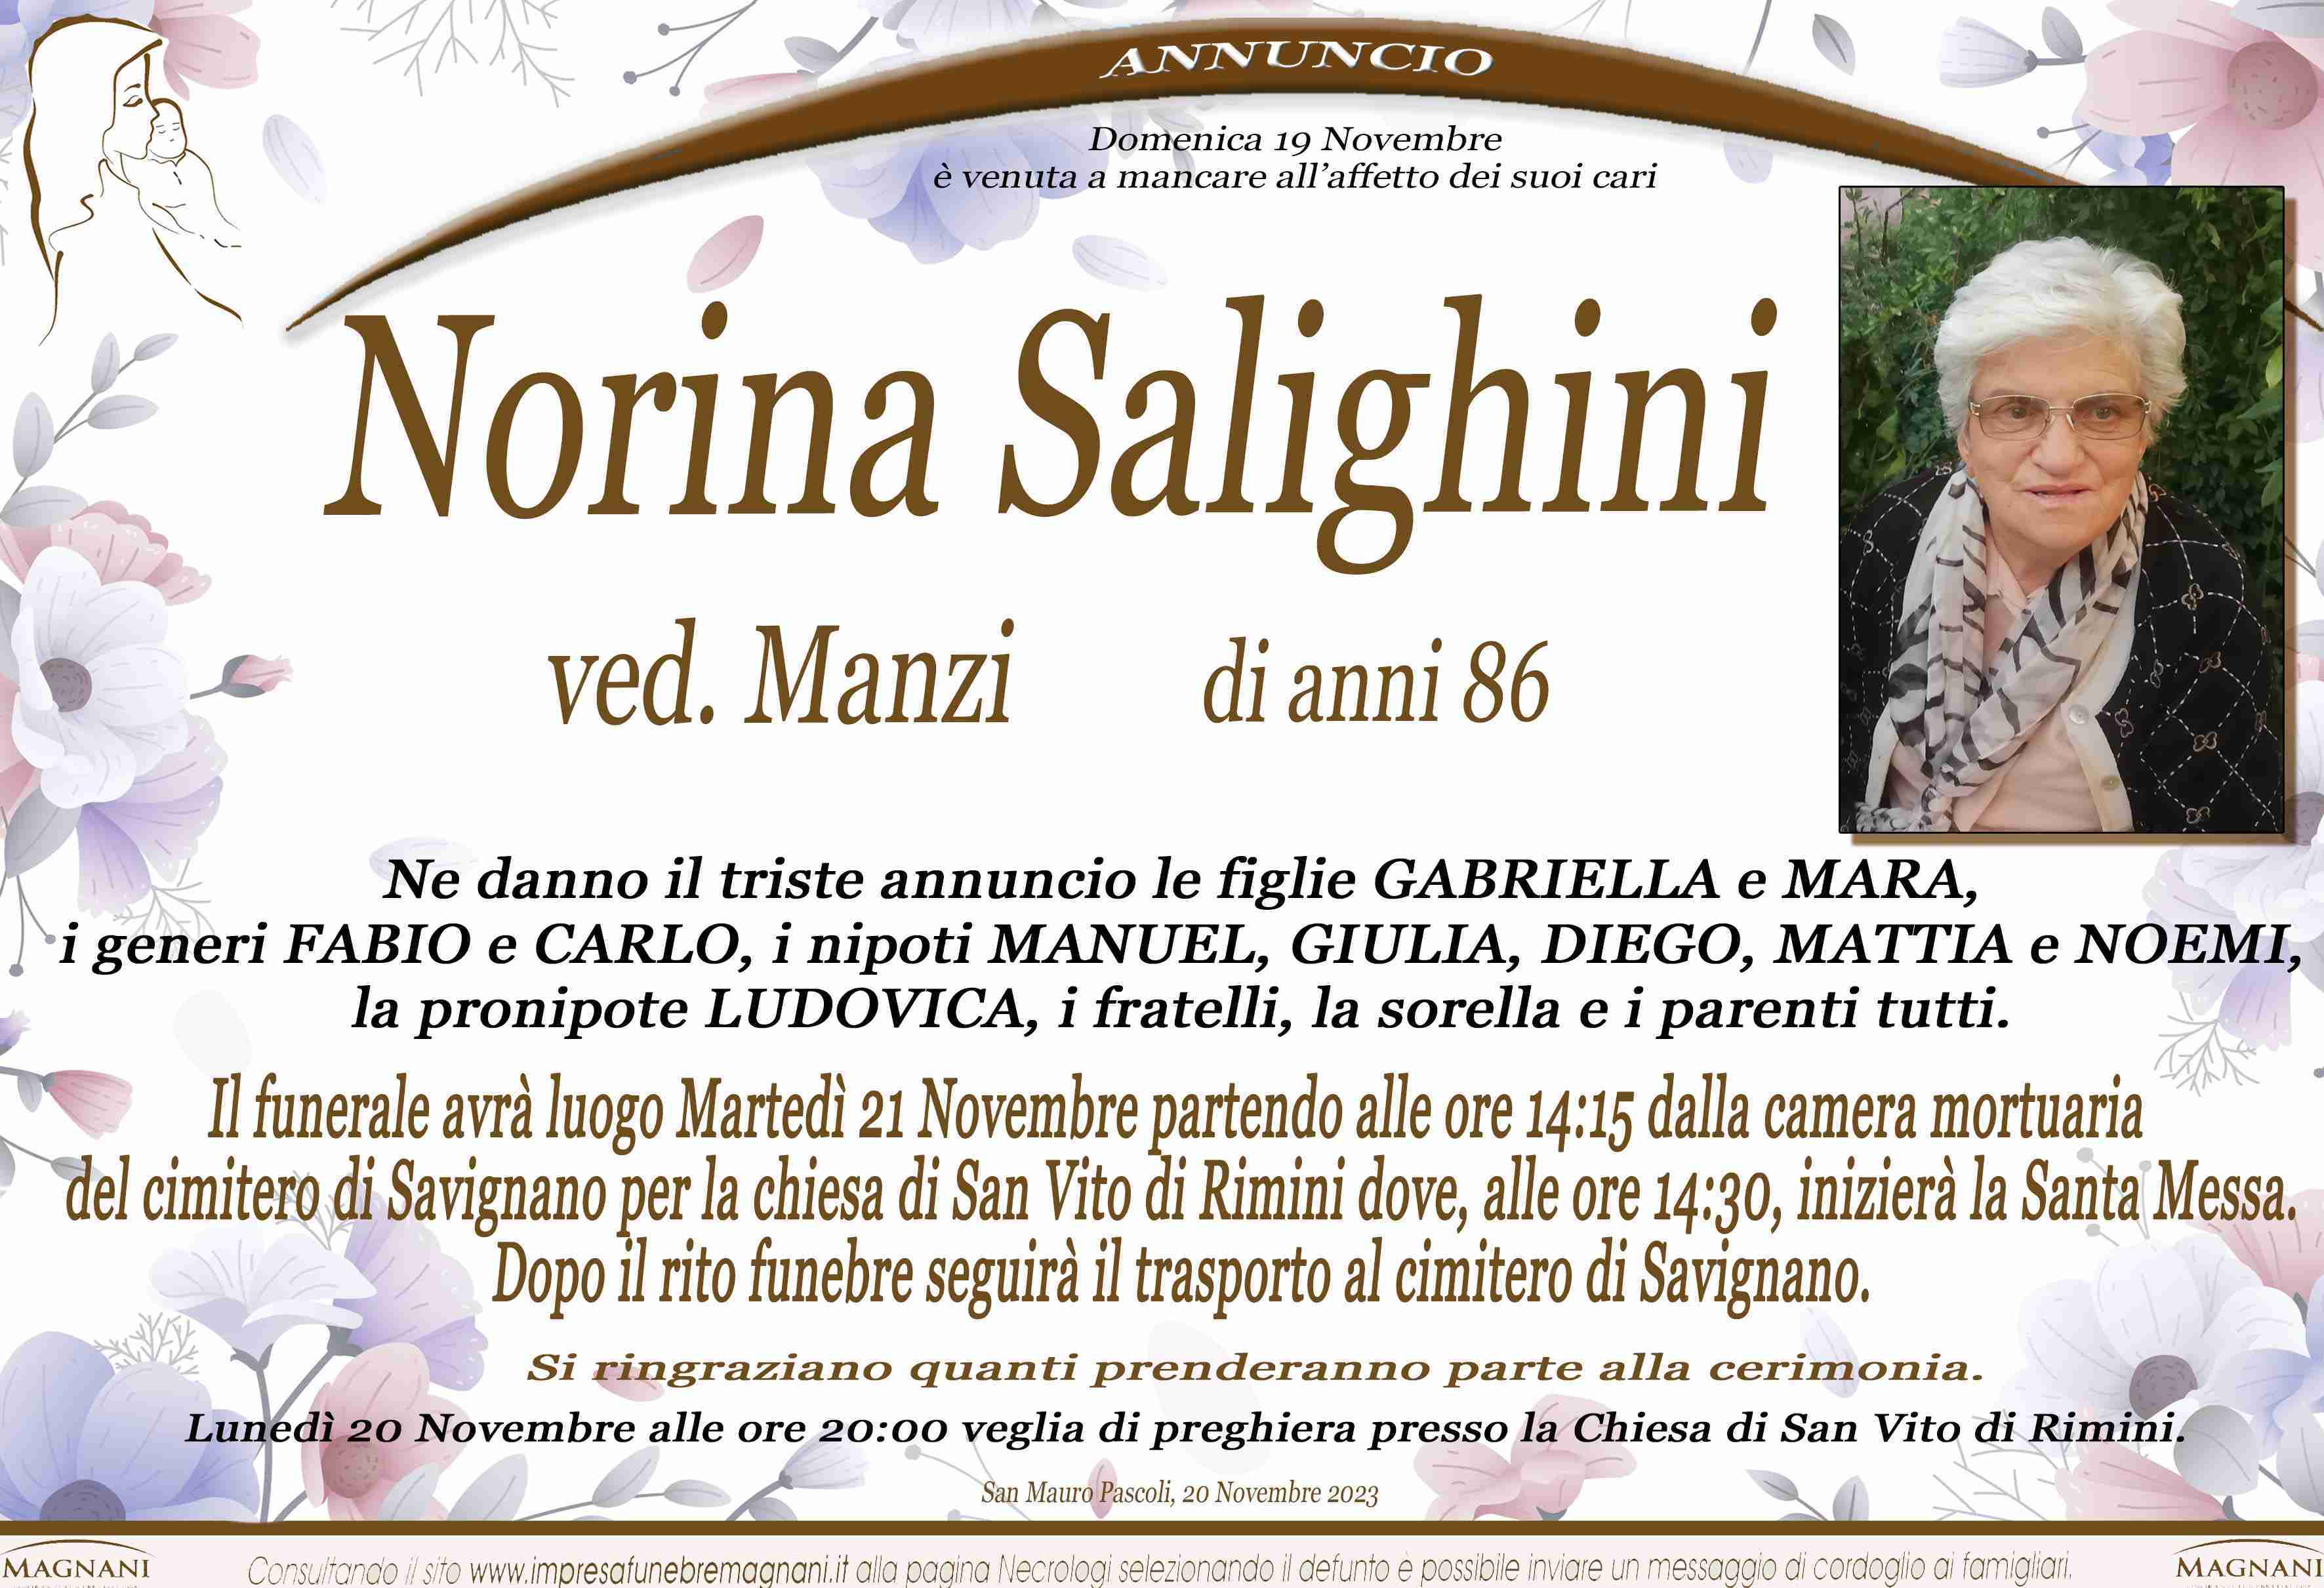 Norina Salighini